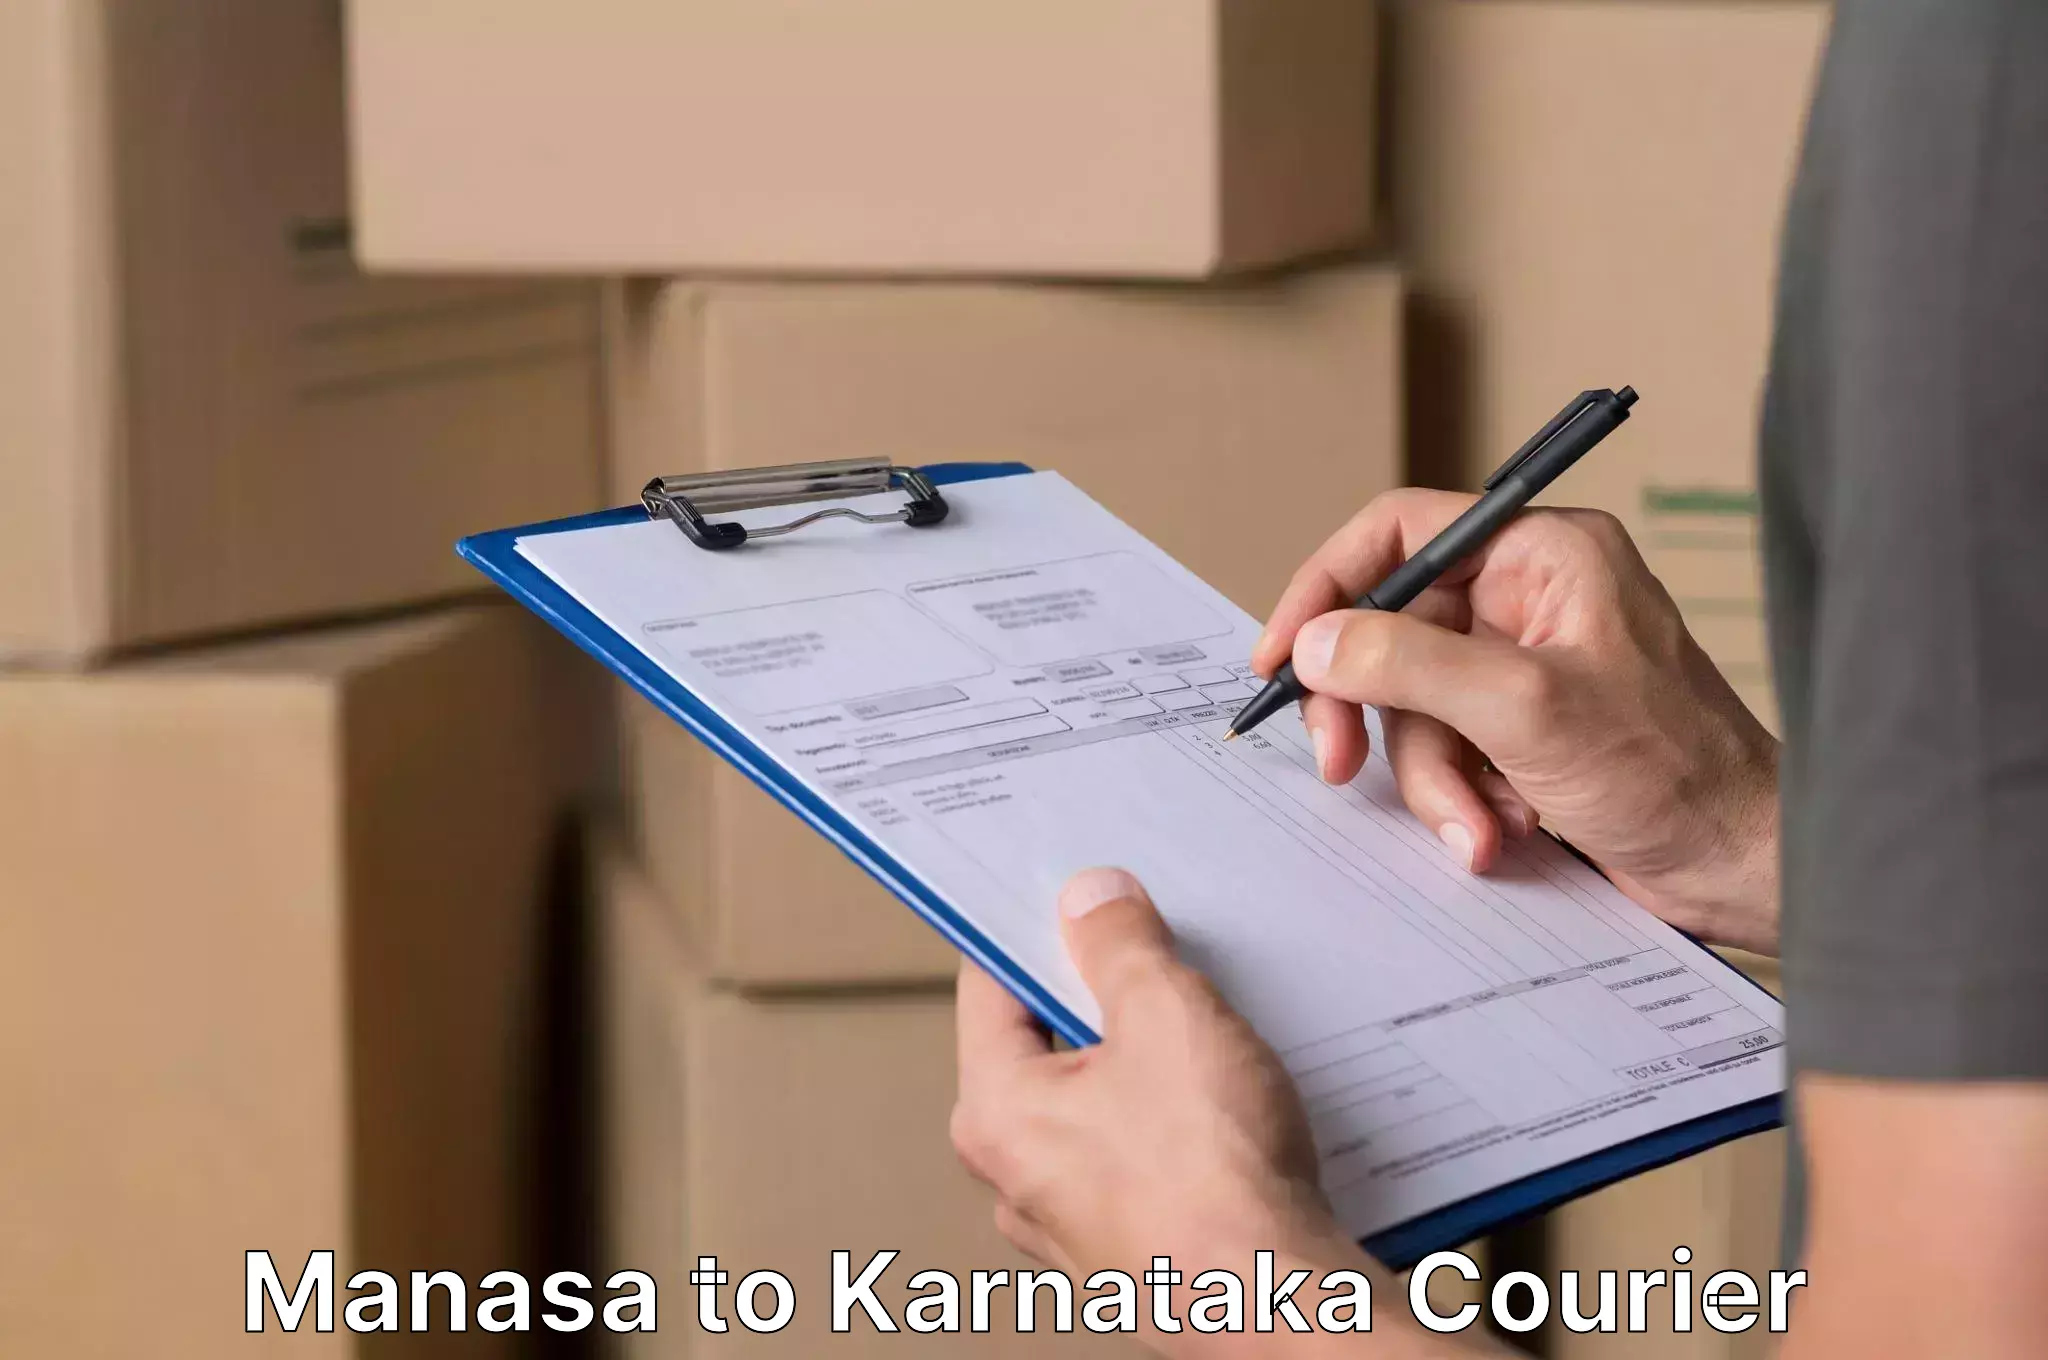 Furniture moving plans Manasa to Karnataka